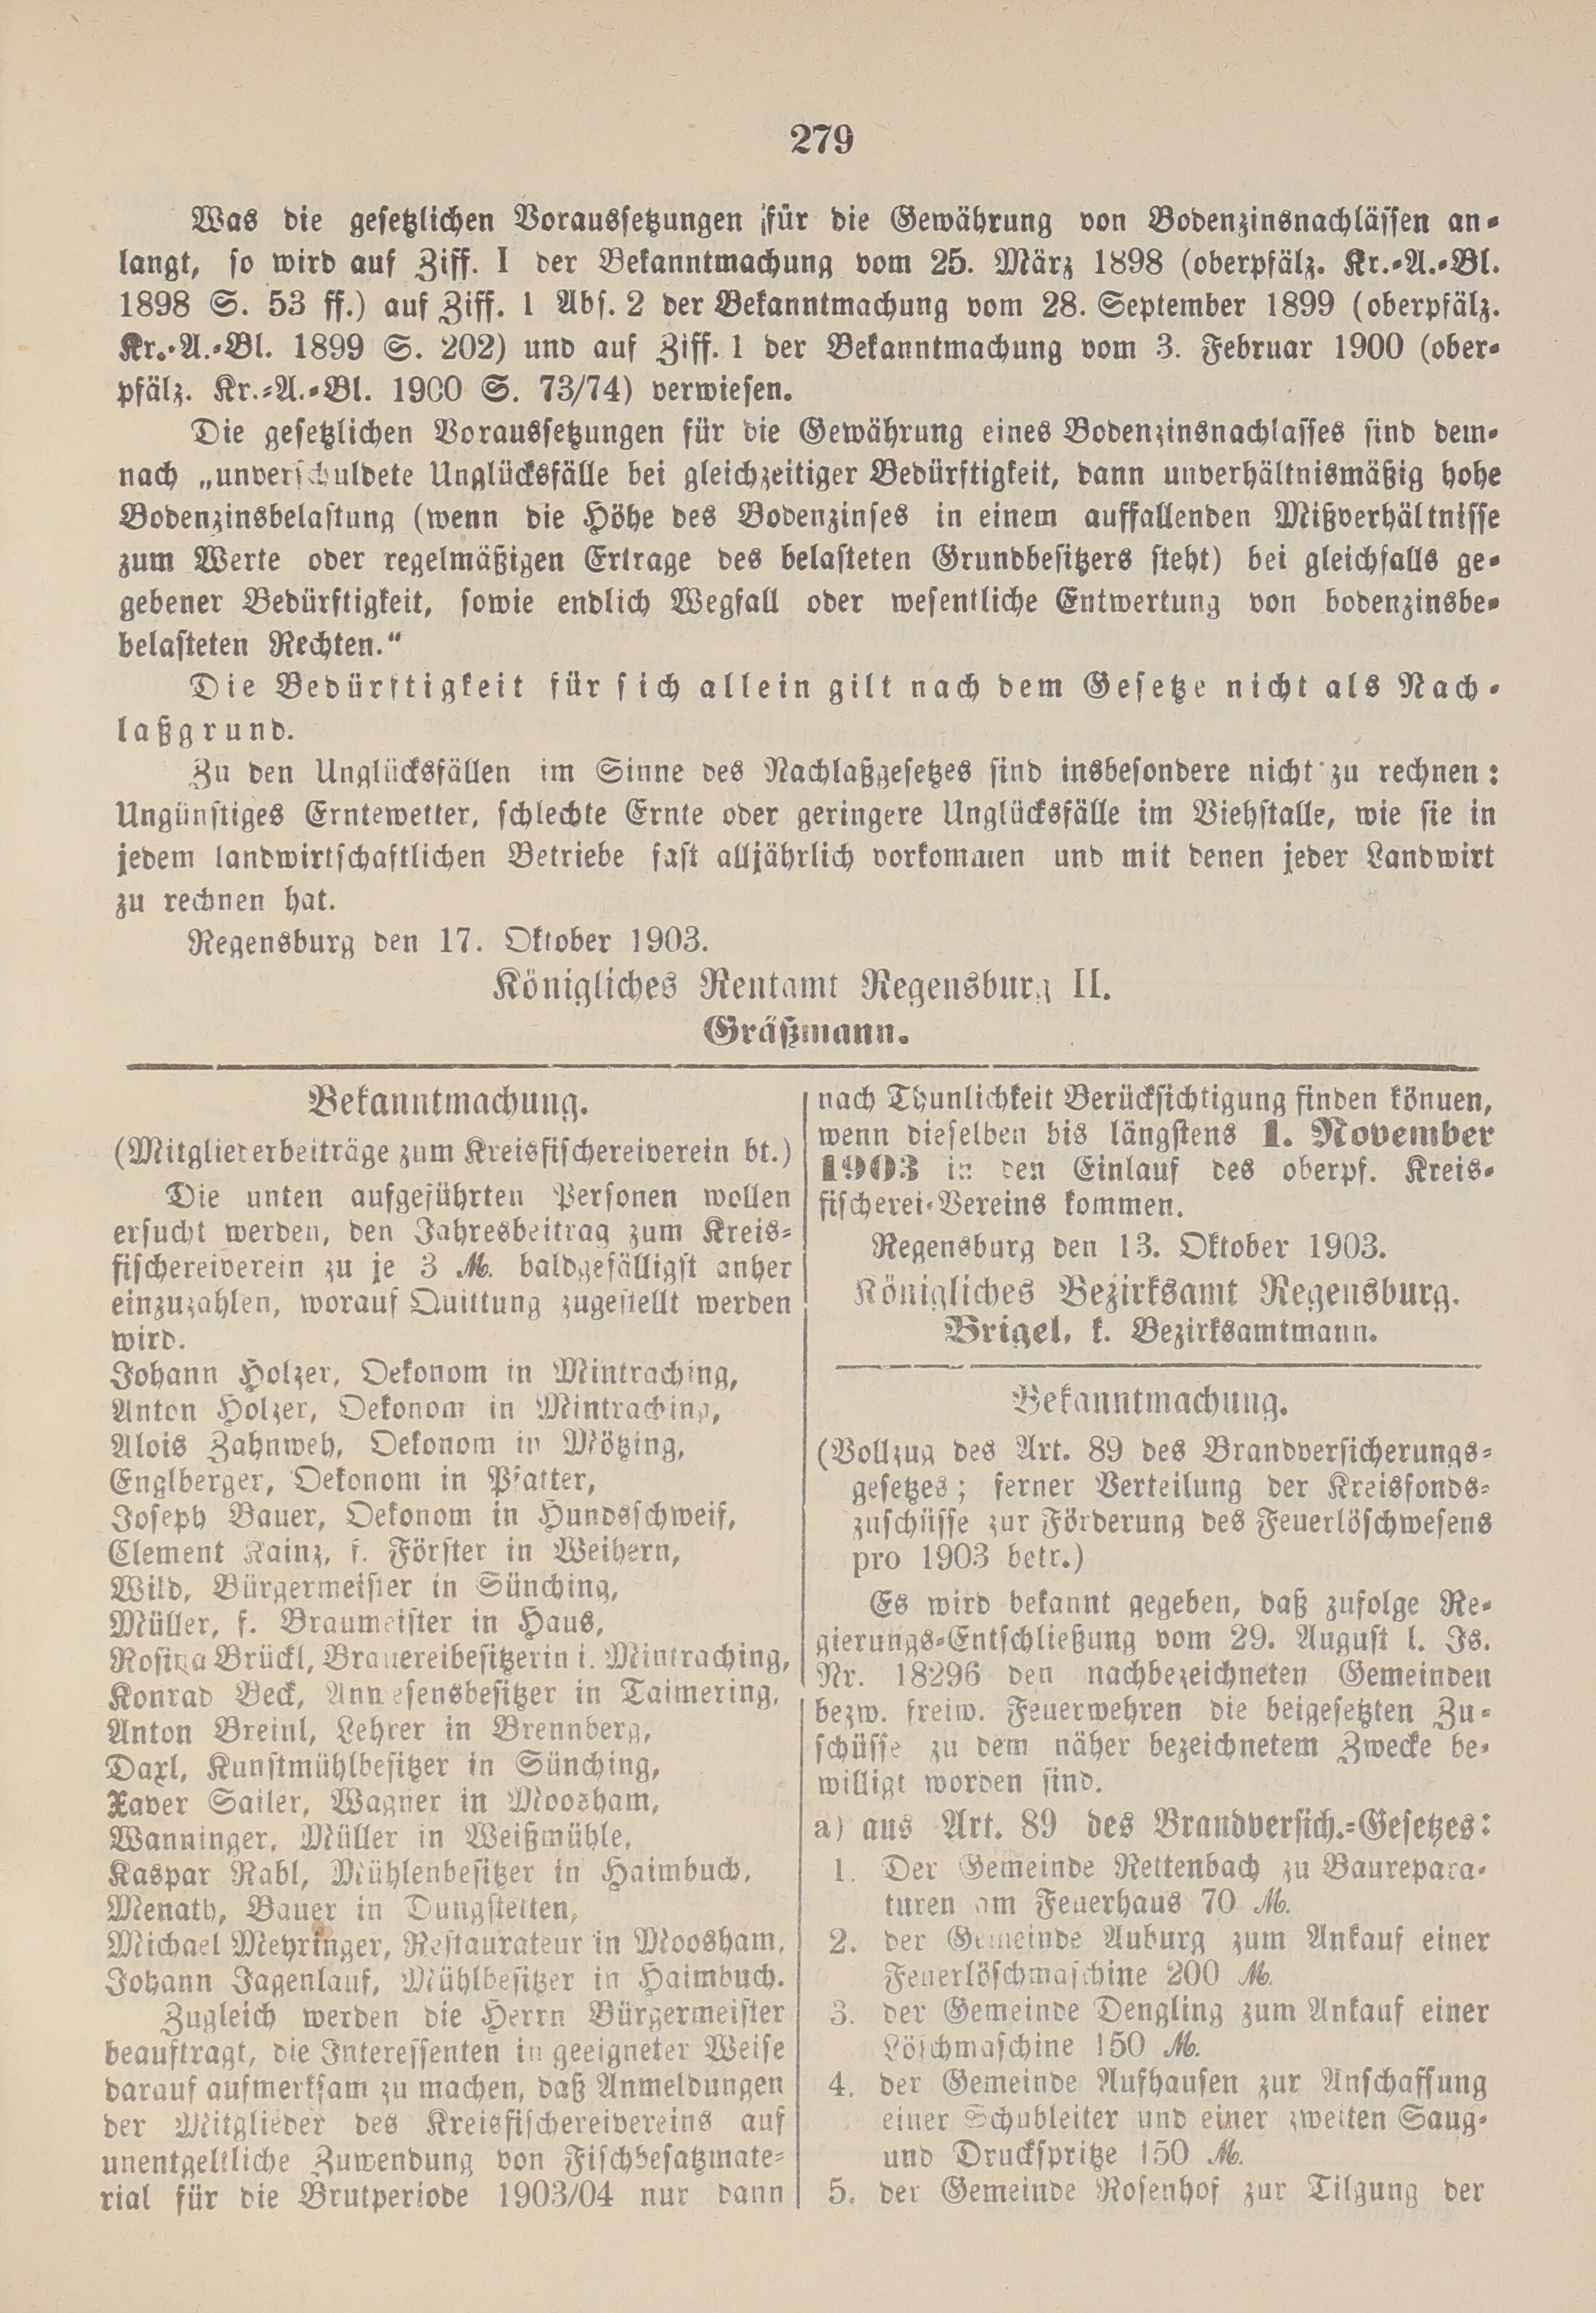 3. amtsblatt-stadtamhof-regensburg-1903-10-25-n43_2980